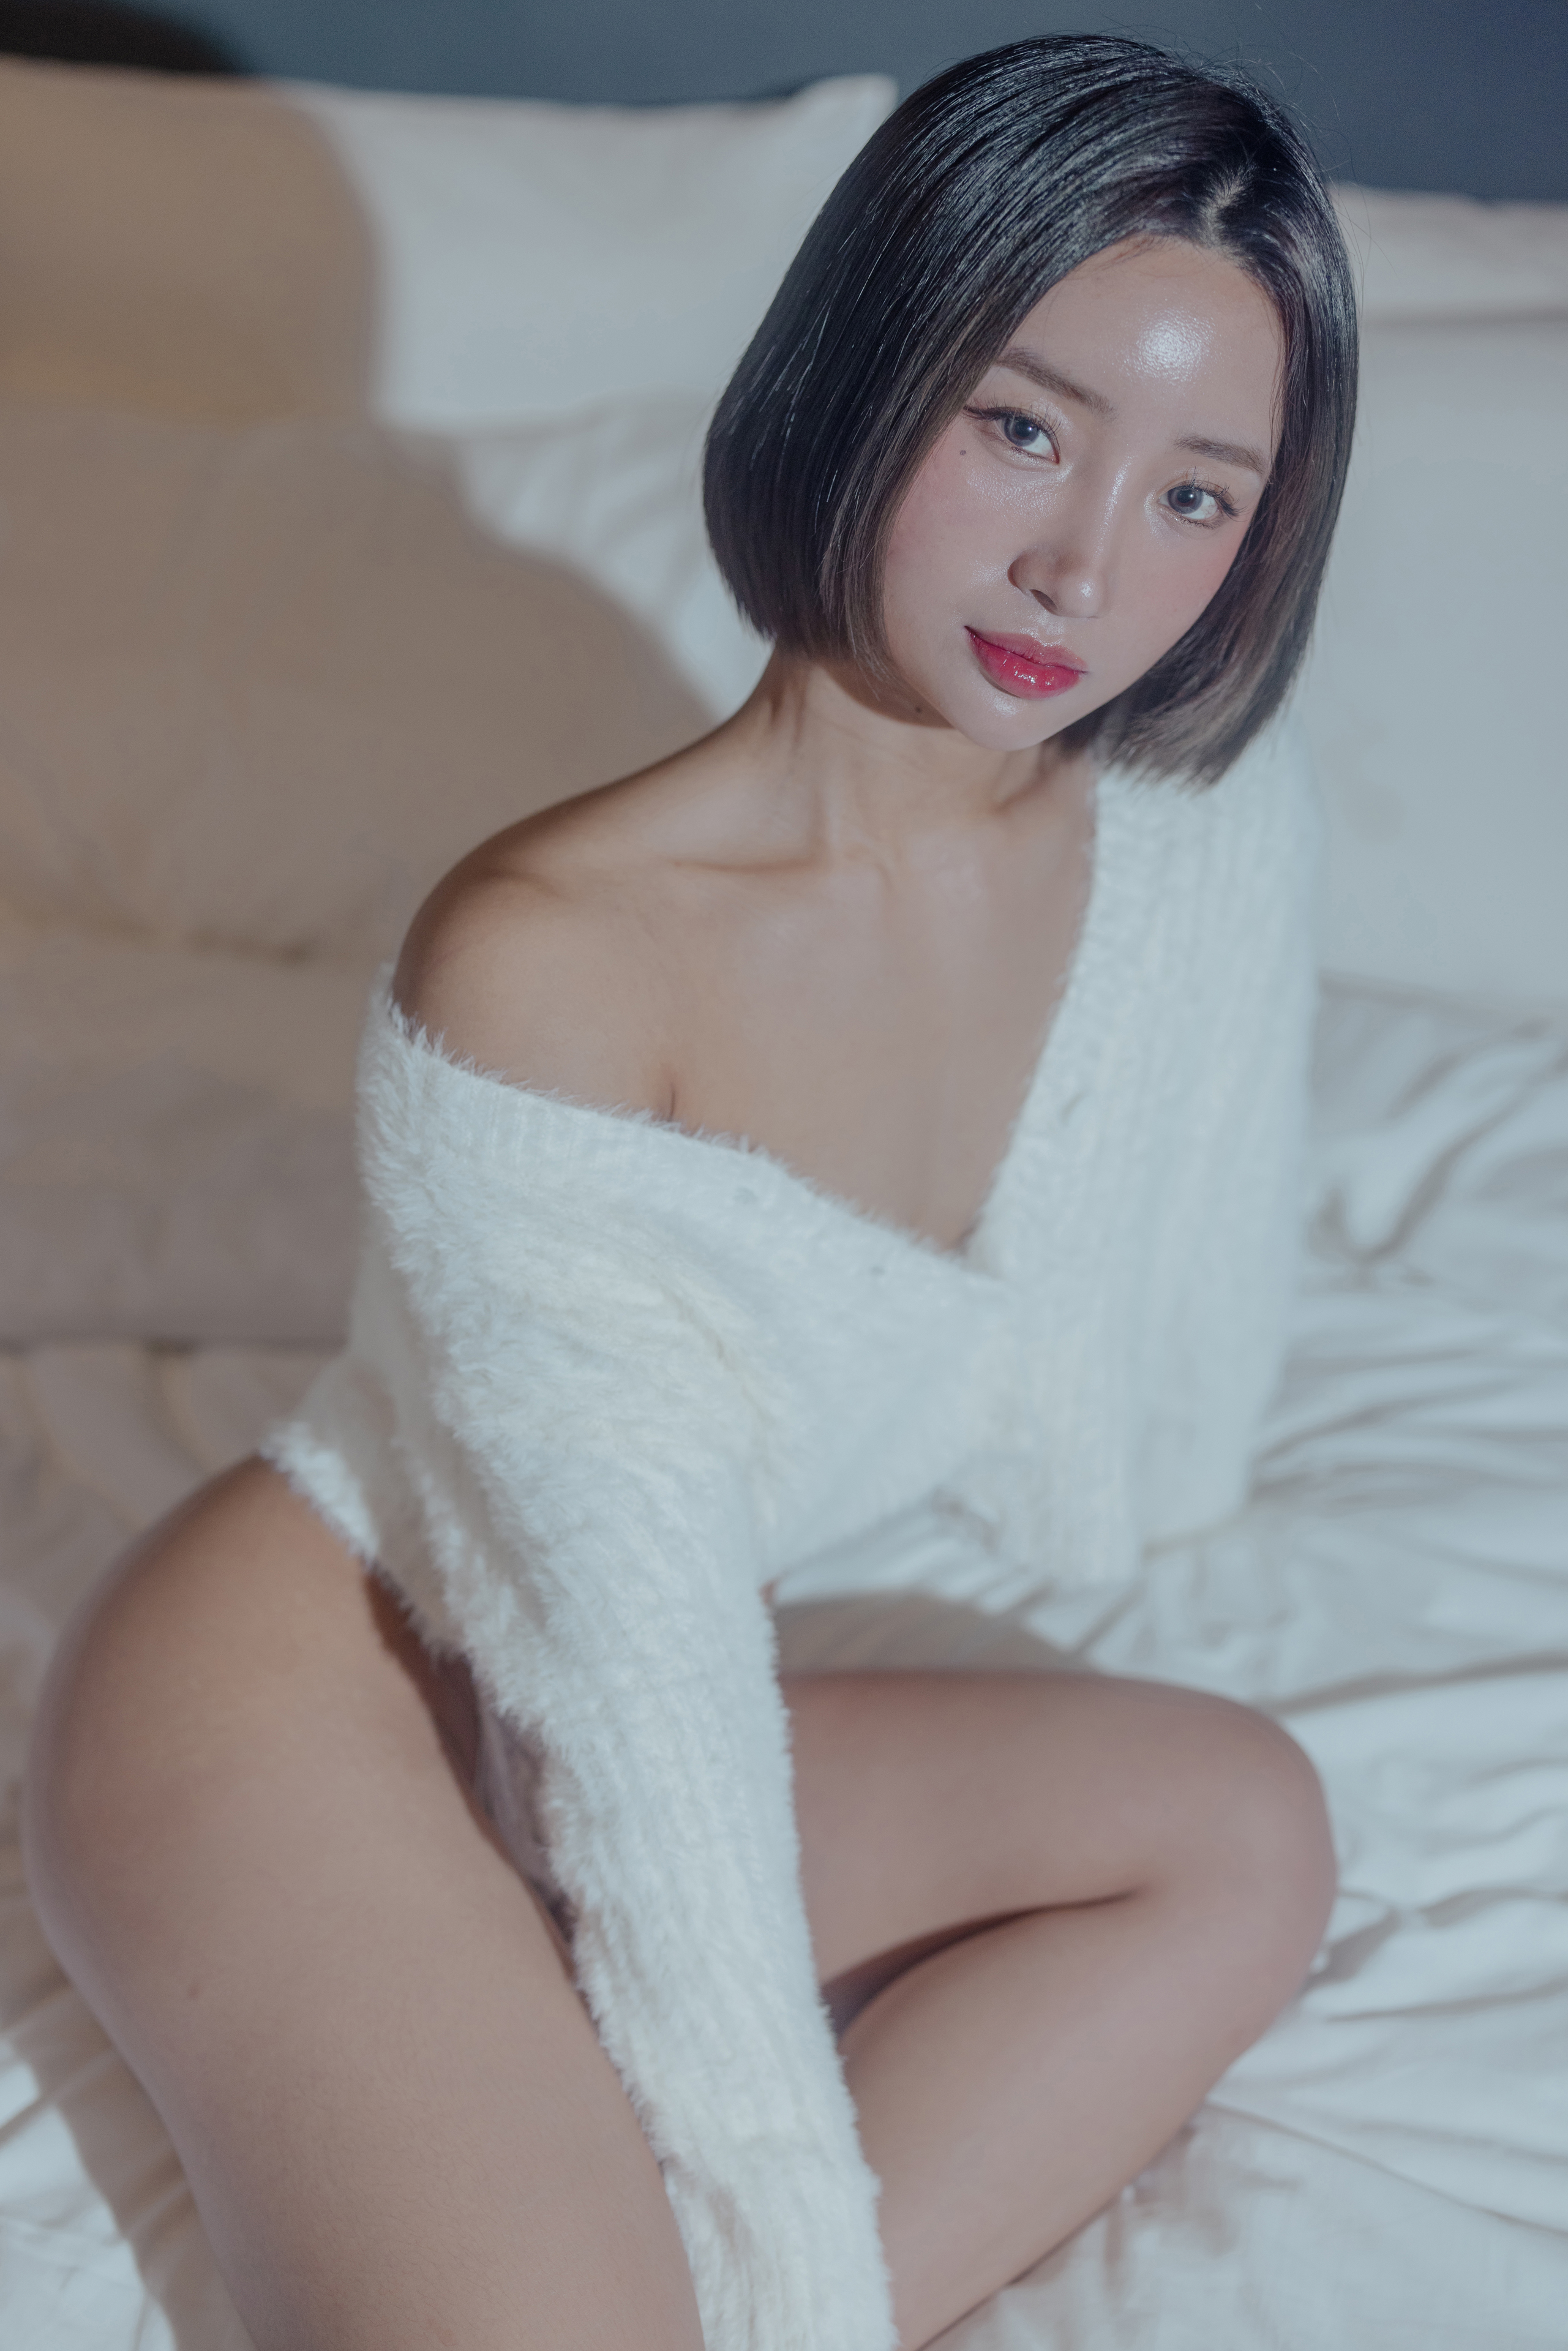 People 2561x3840 Booty Queen women model Asian women indoors